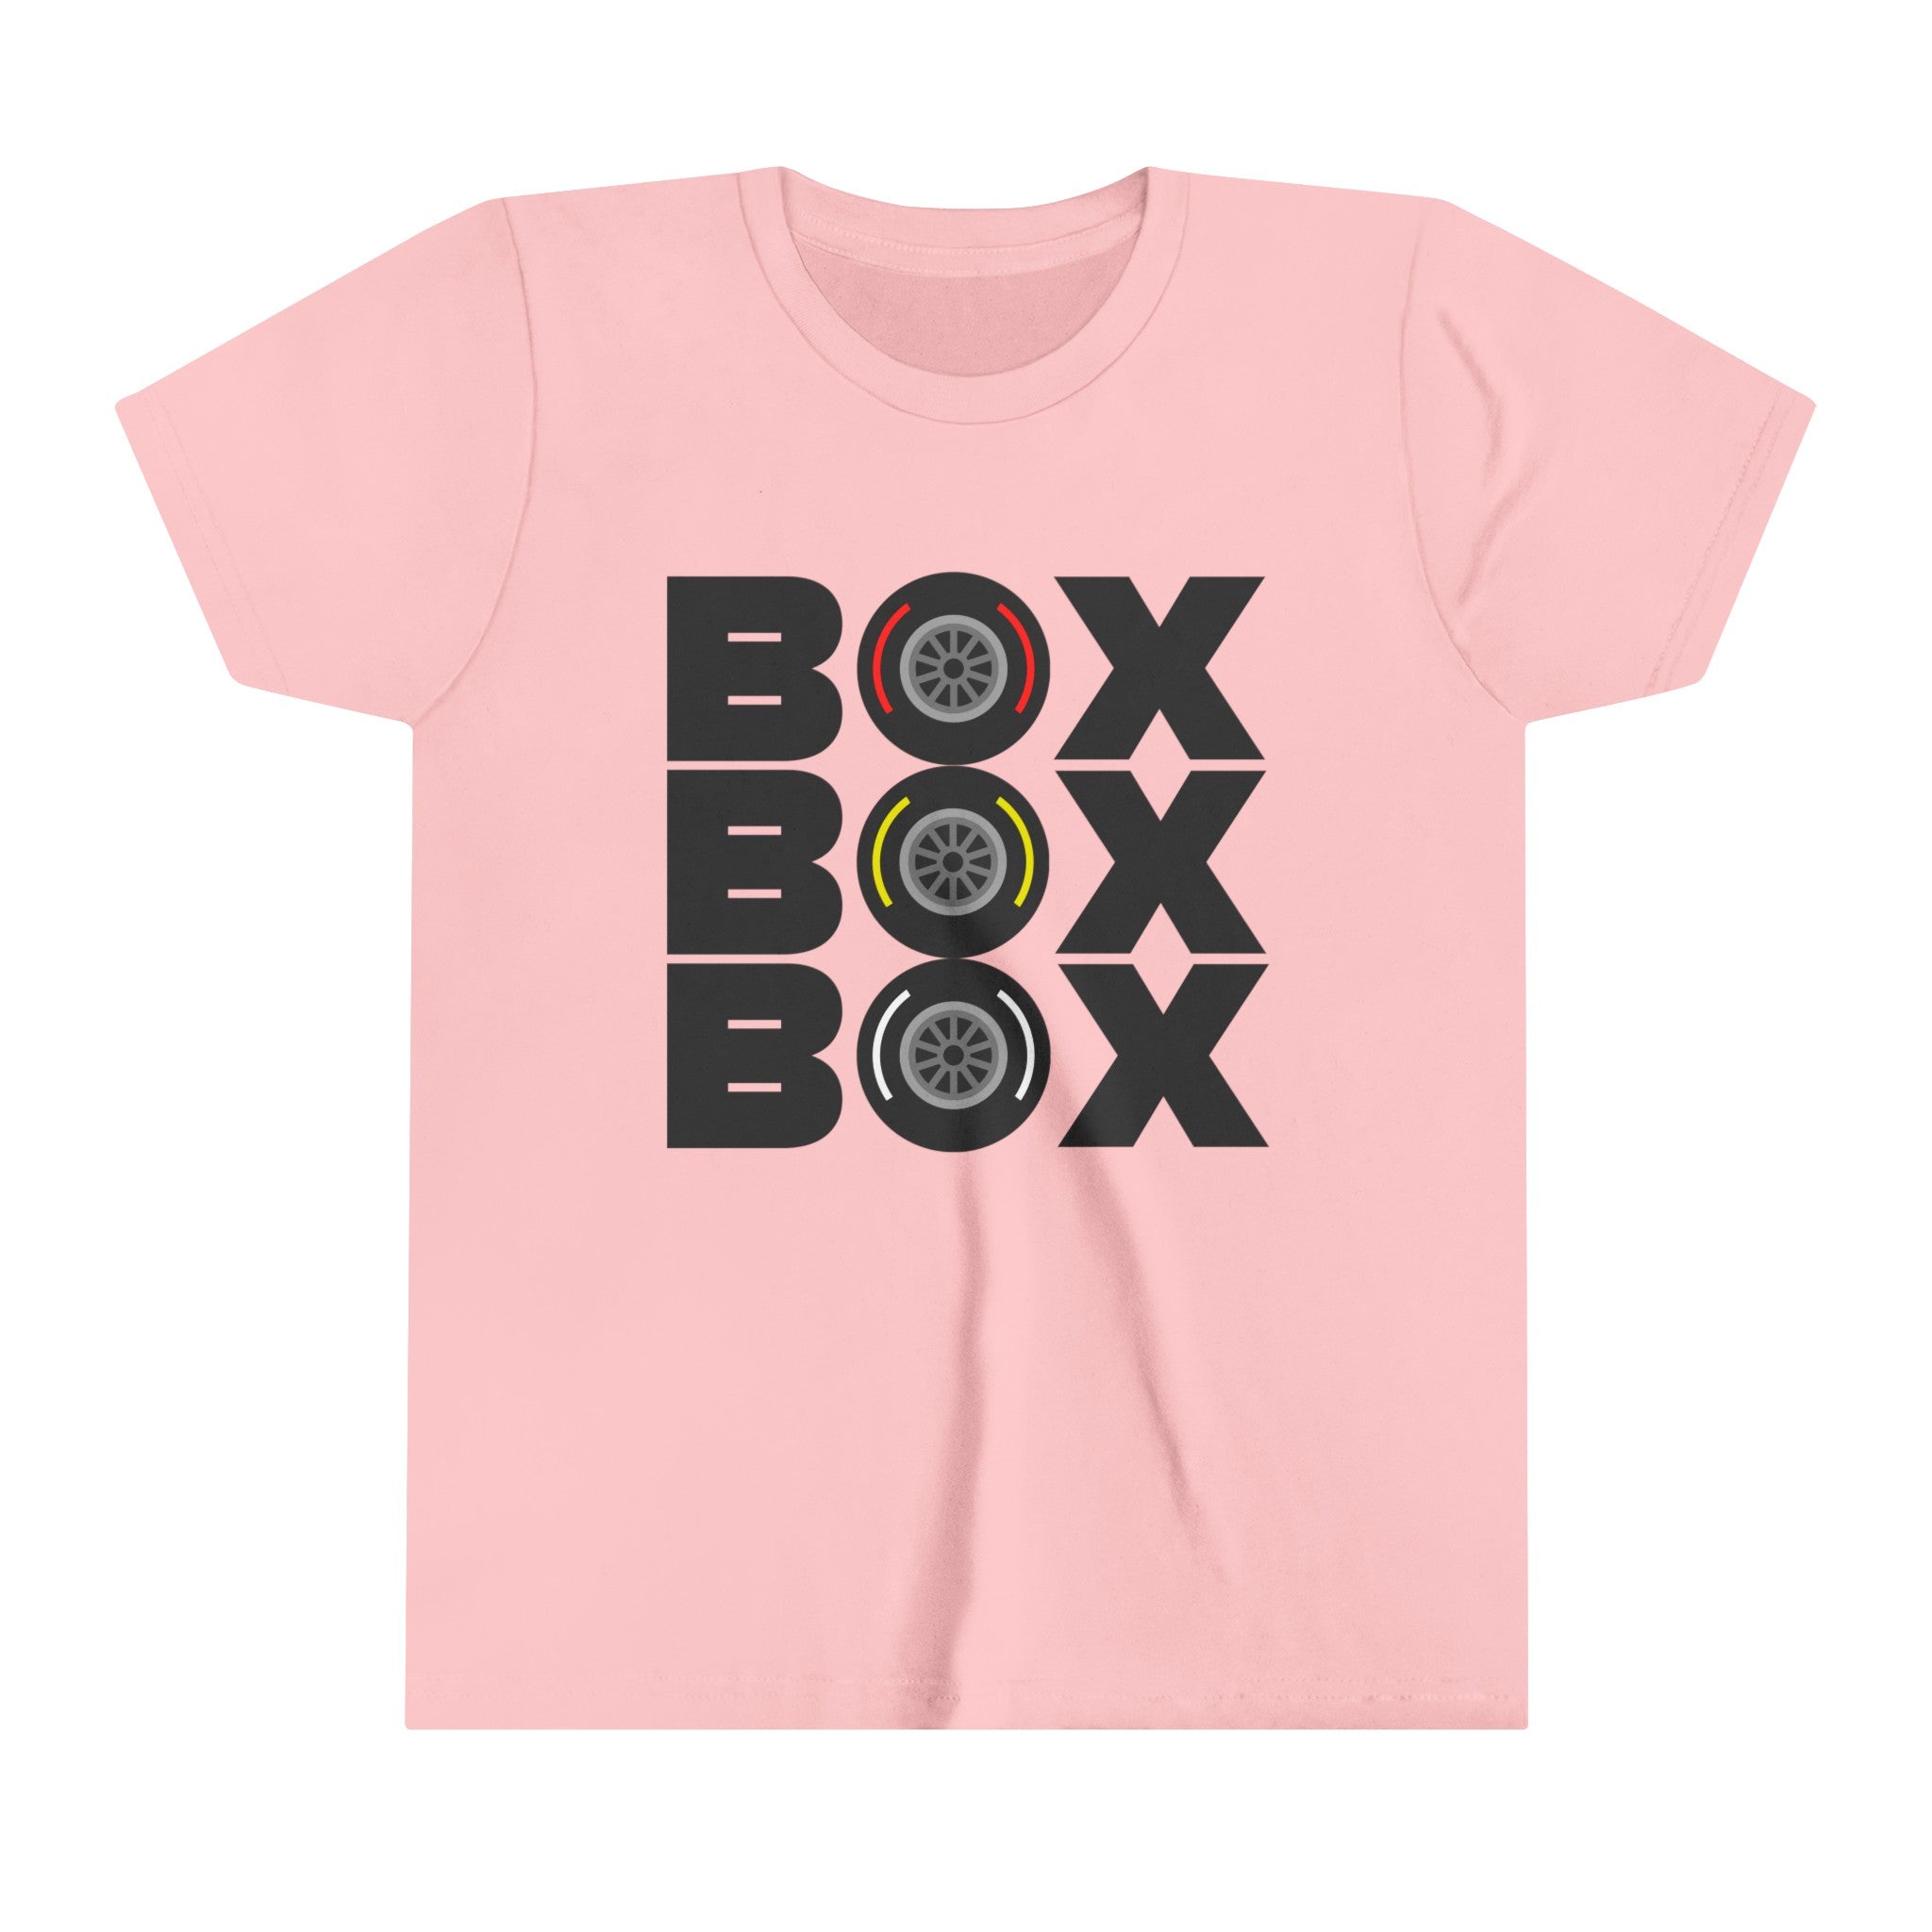 BOX BOX BOX Youth Short Sleeve Tee